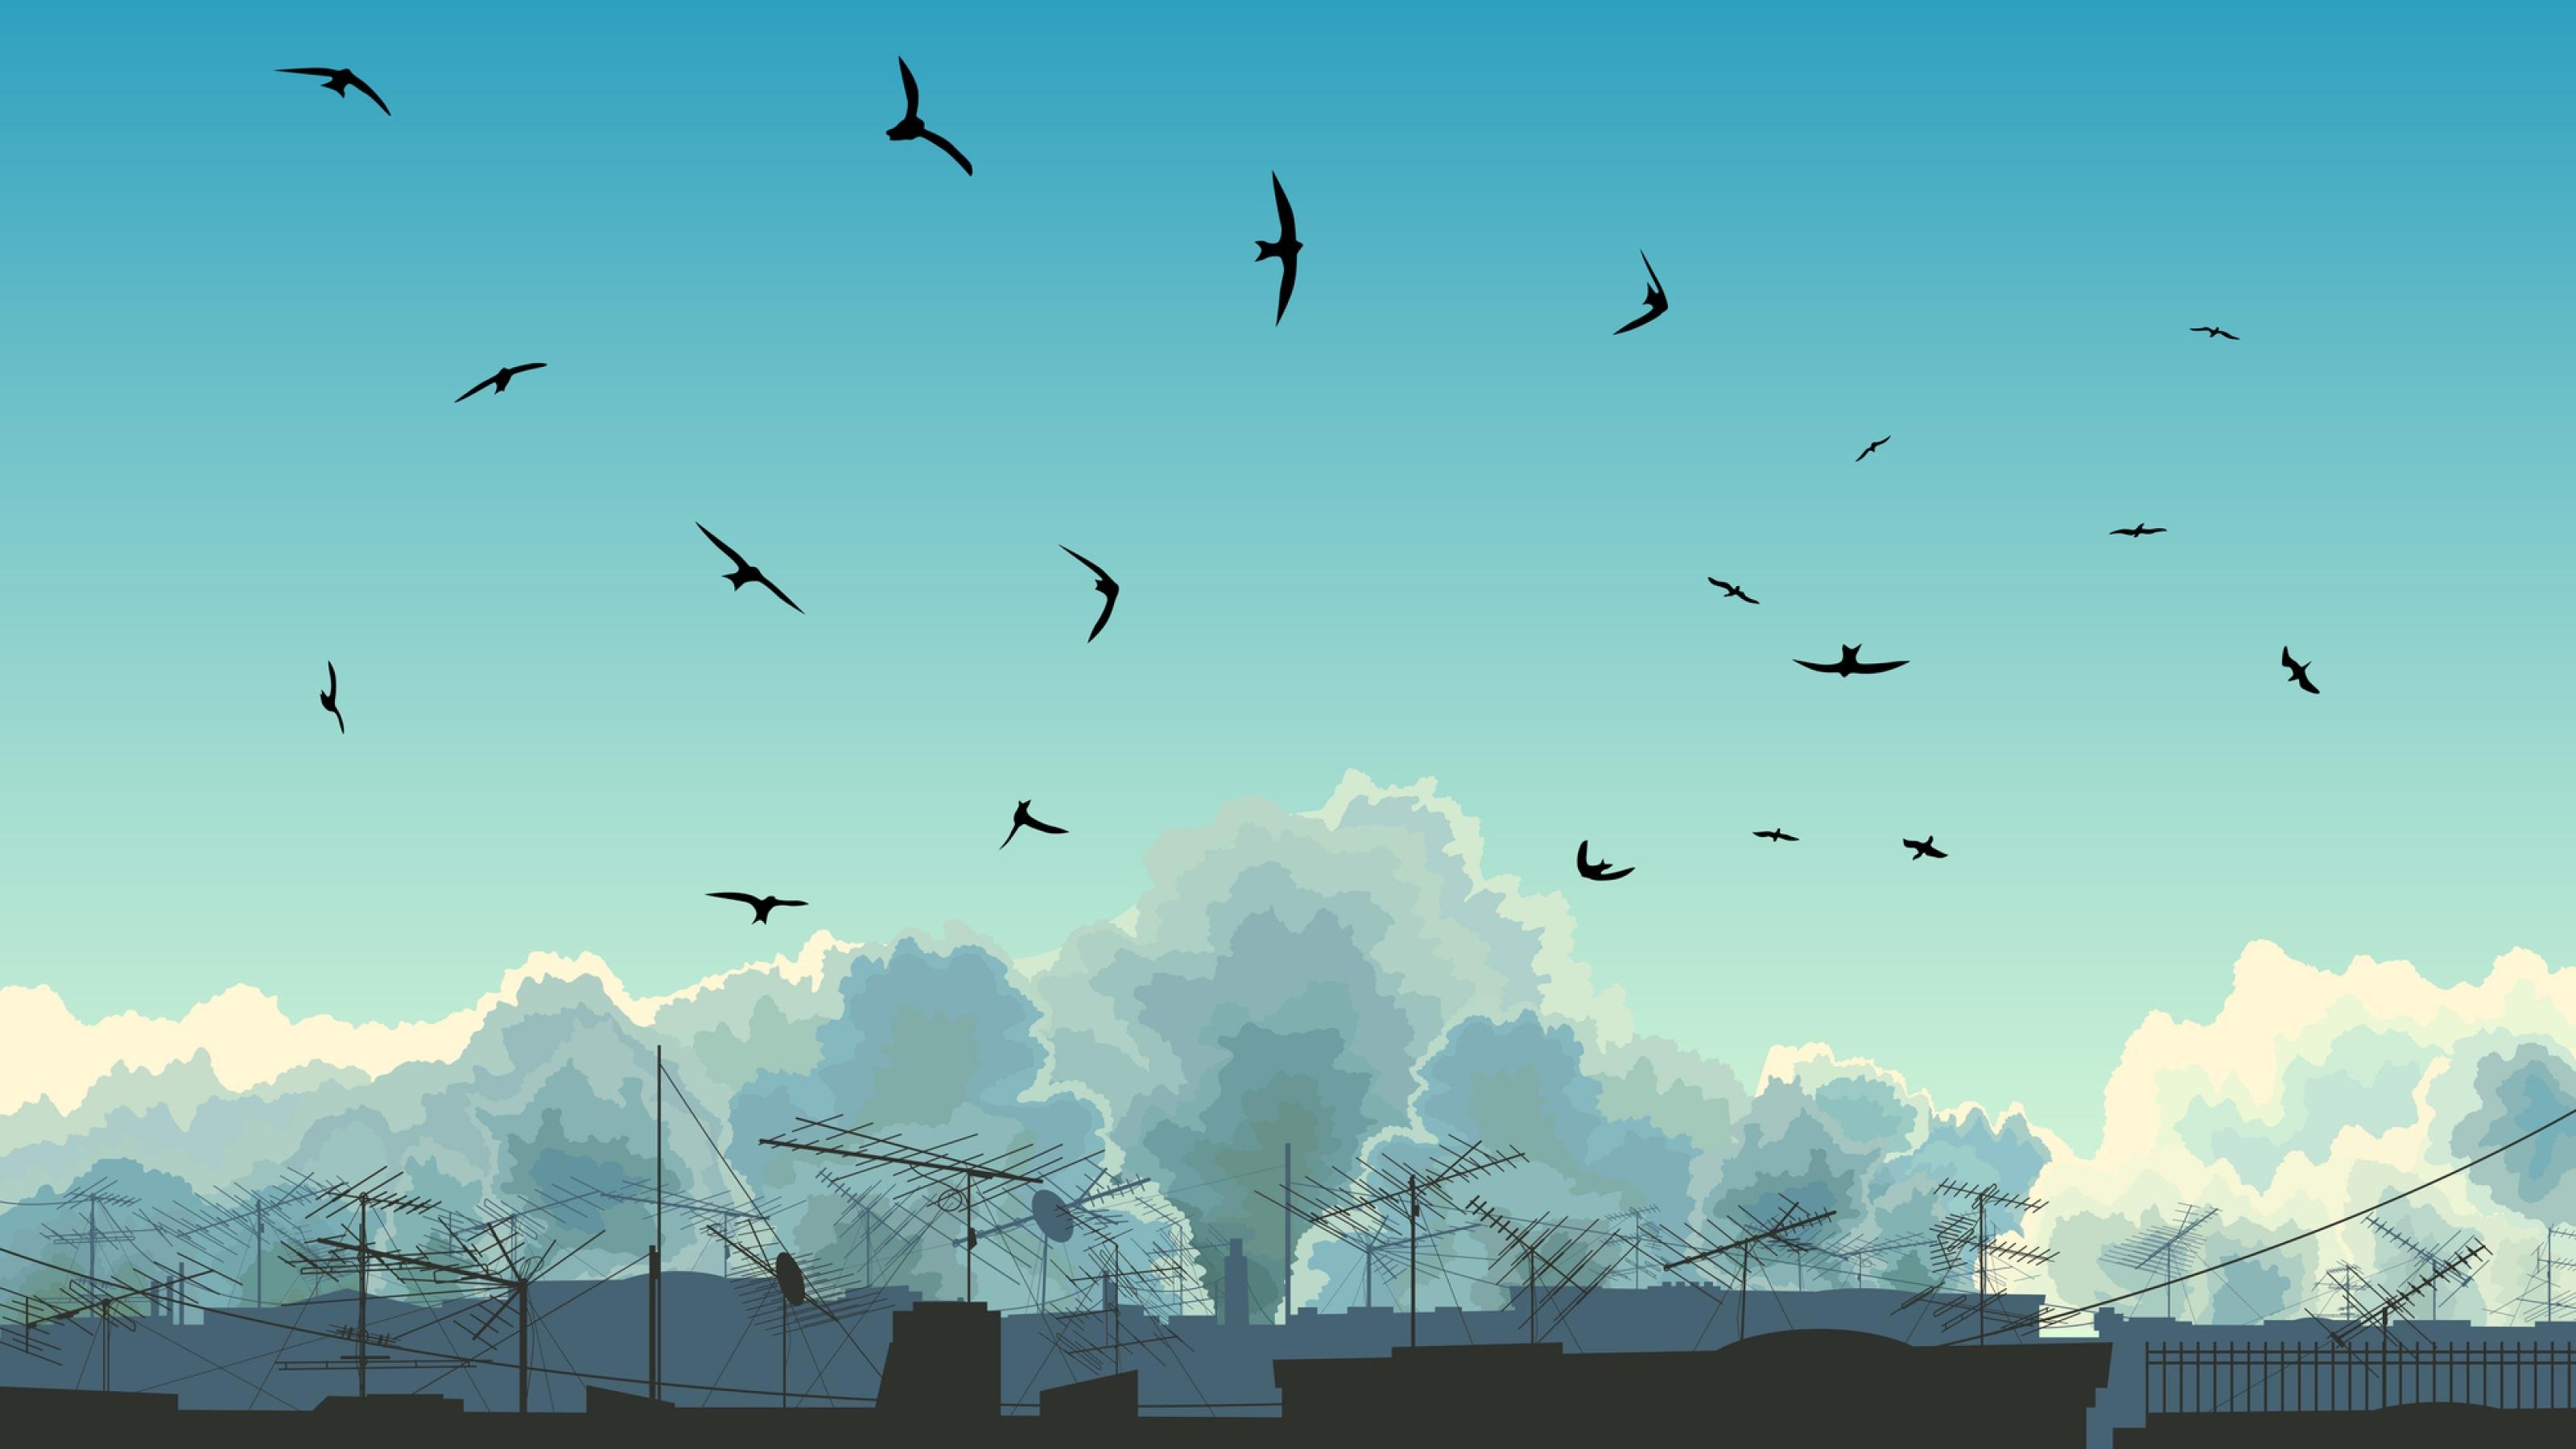 Illustration eines Himmel an dem Vögel fliegen. Am unteren Bildrand sieht man die Antennen von Häuserdächern.